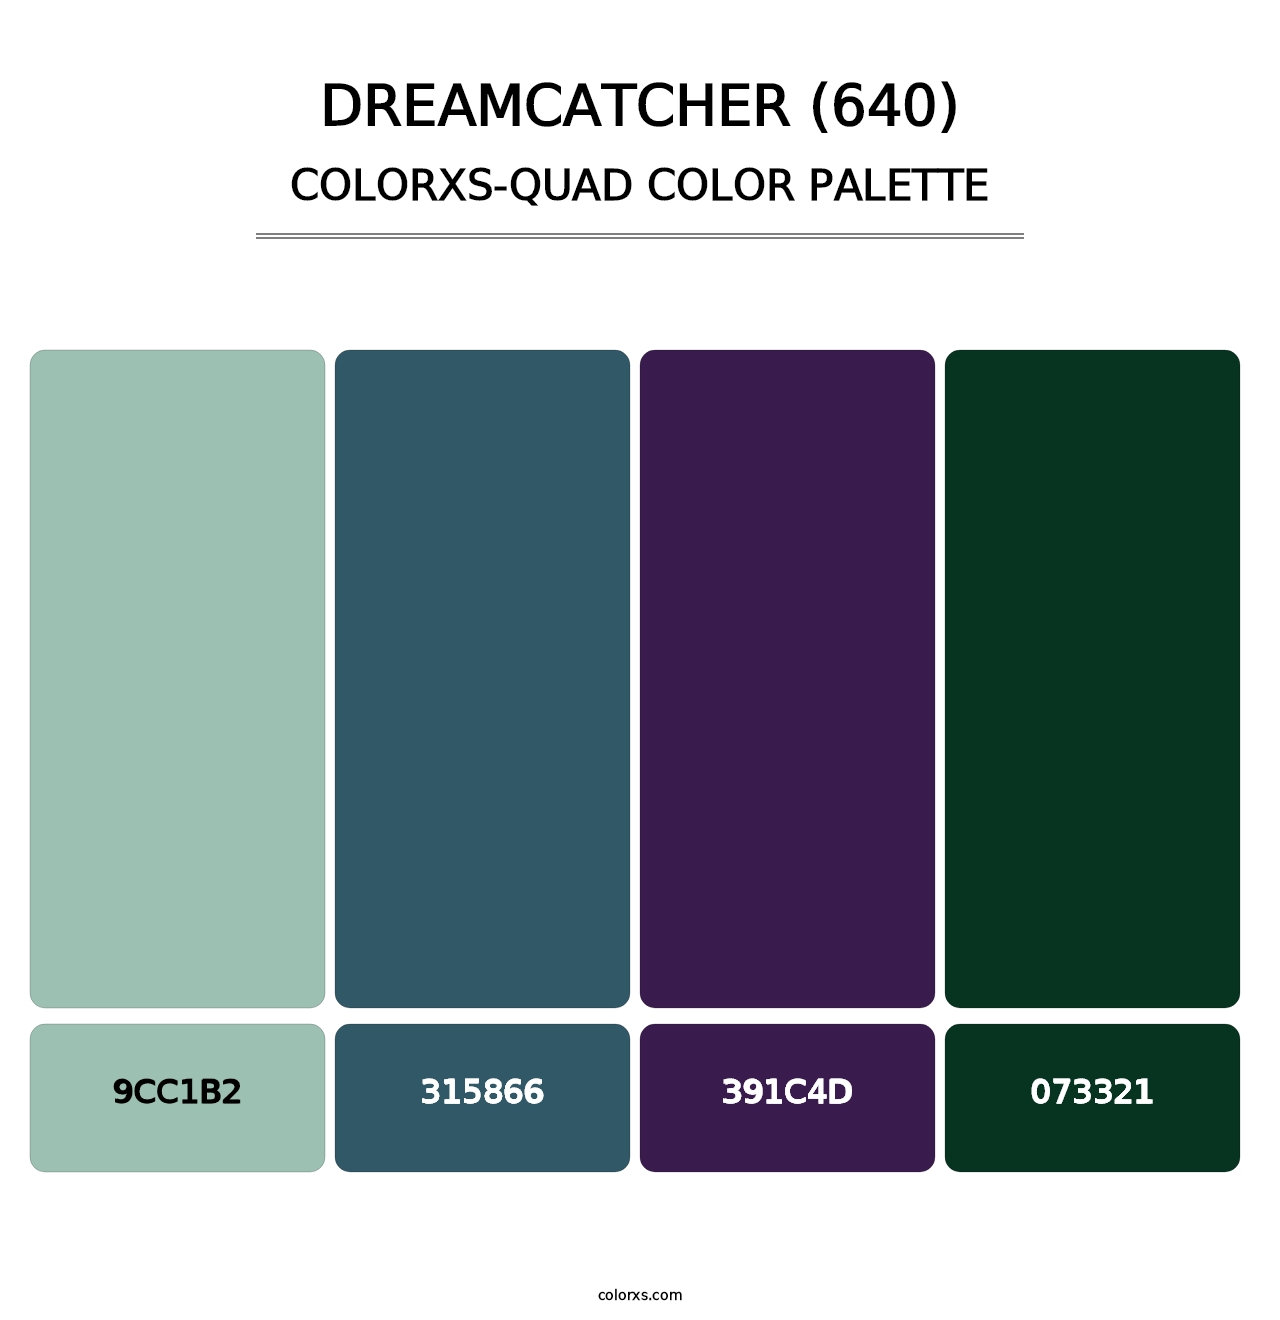 Dreamcatcher (640) - Colorxs Quad Palette